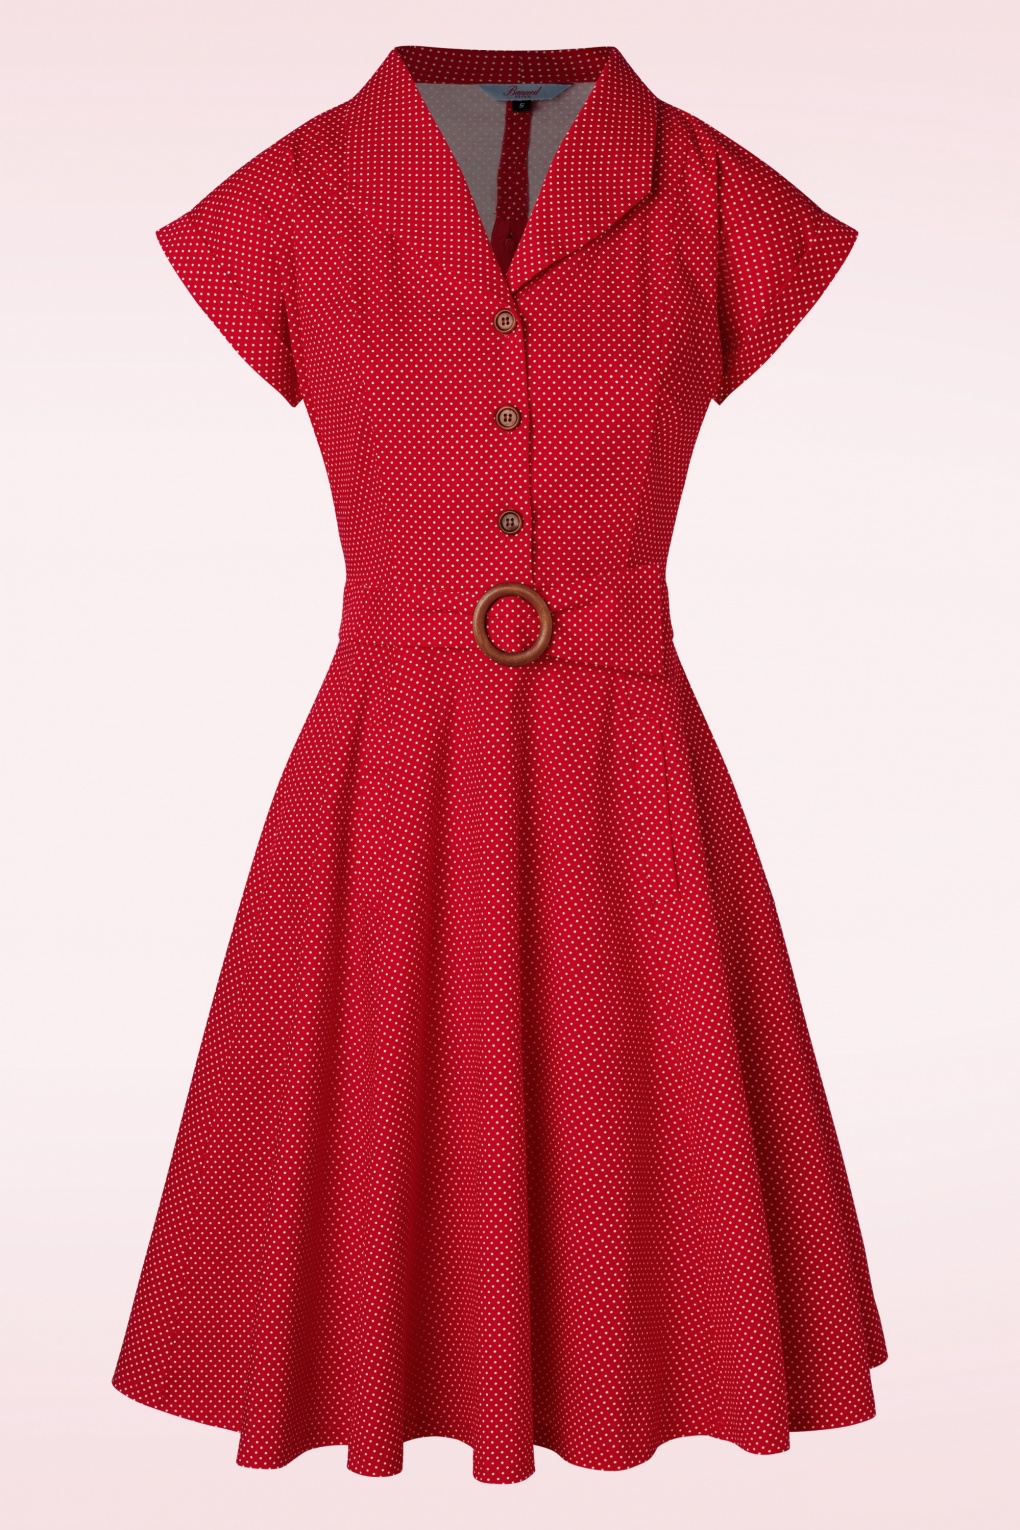 Polka Dot Tanz Kleid in Rot von Banned Retro